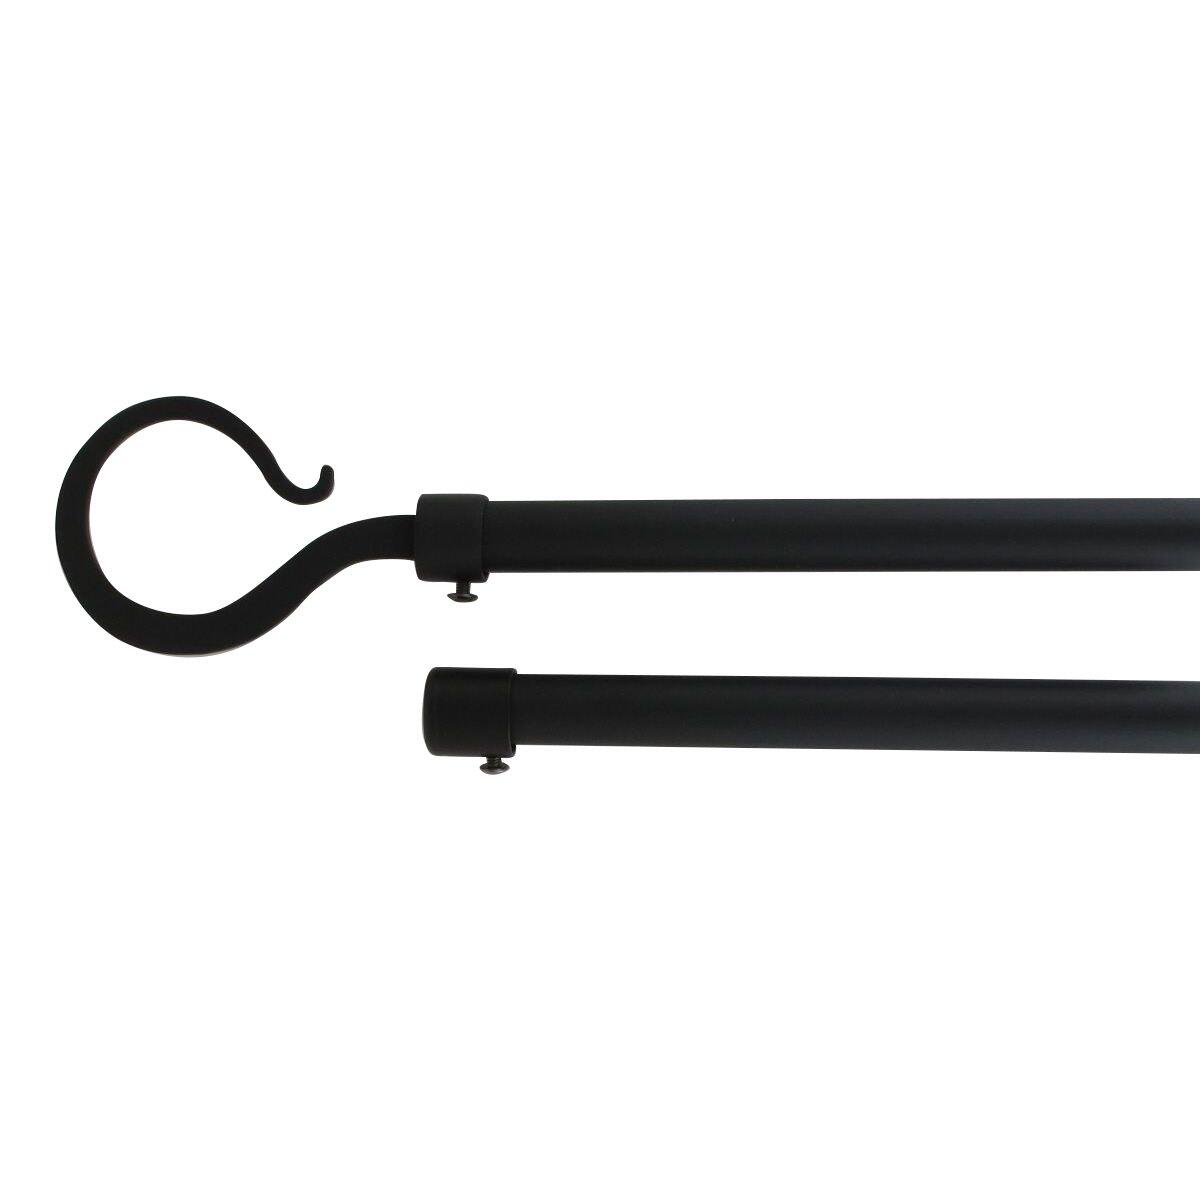 Kit para barra extensible doble barra (L210 - L380 cm / D19 mm) Atelier Negro mate 1